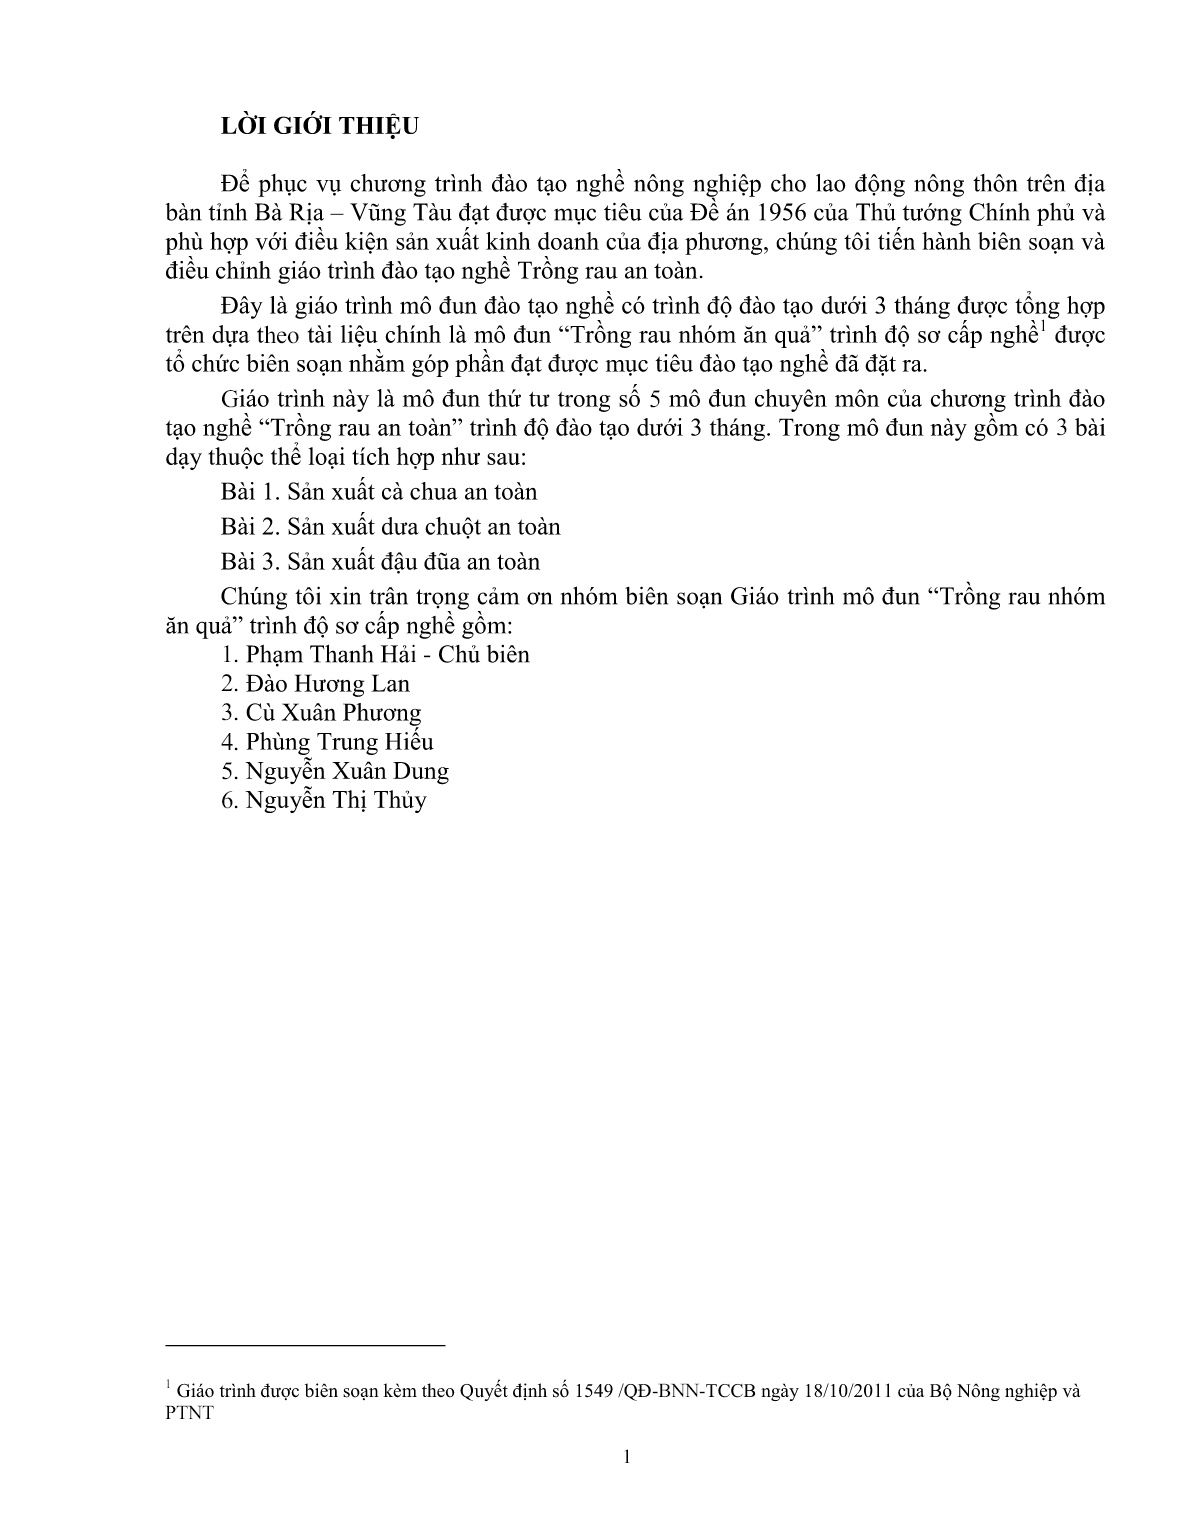 Giáo trình mô đun Trồng rau nhóm ăn quả (Trình độ: Đào tạo dưới 03 tháng) trang 2